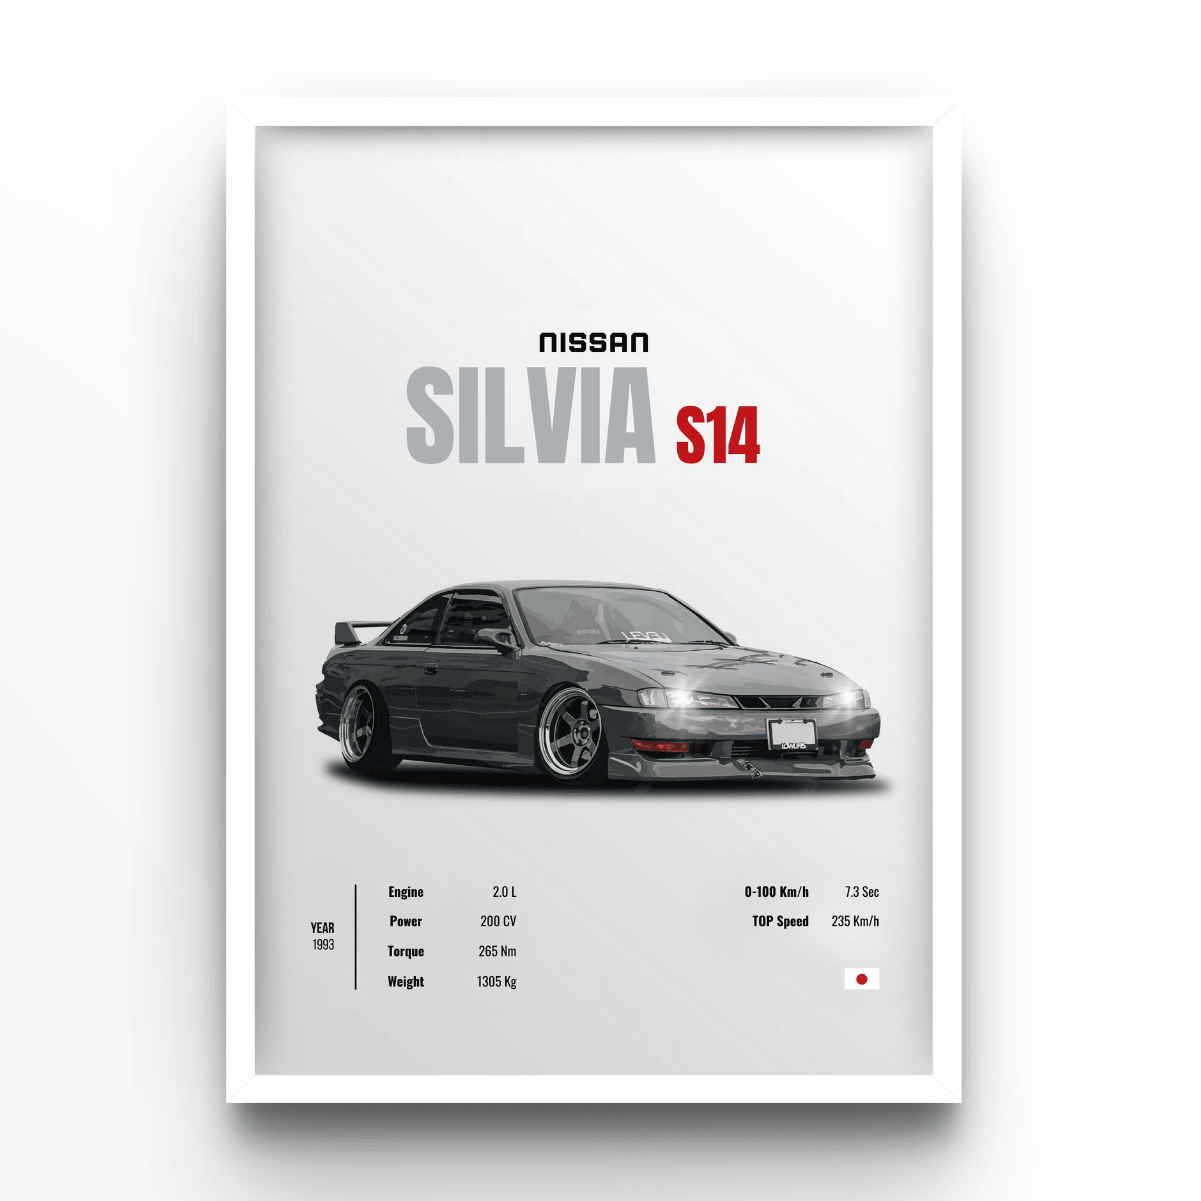 Nissan Silvia S14 - A4, A3, A2 Posters Base - Poster Print Shop / Art Prints / PostersBase